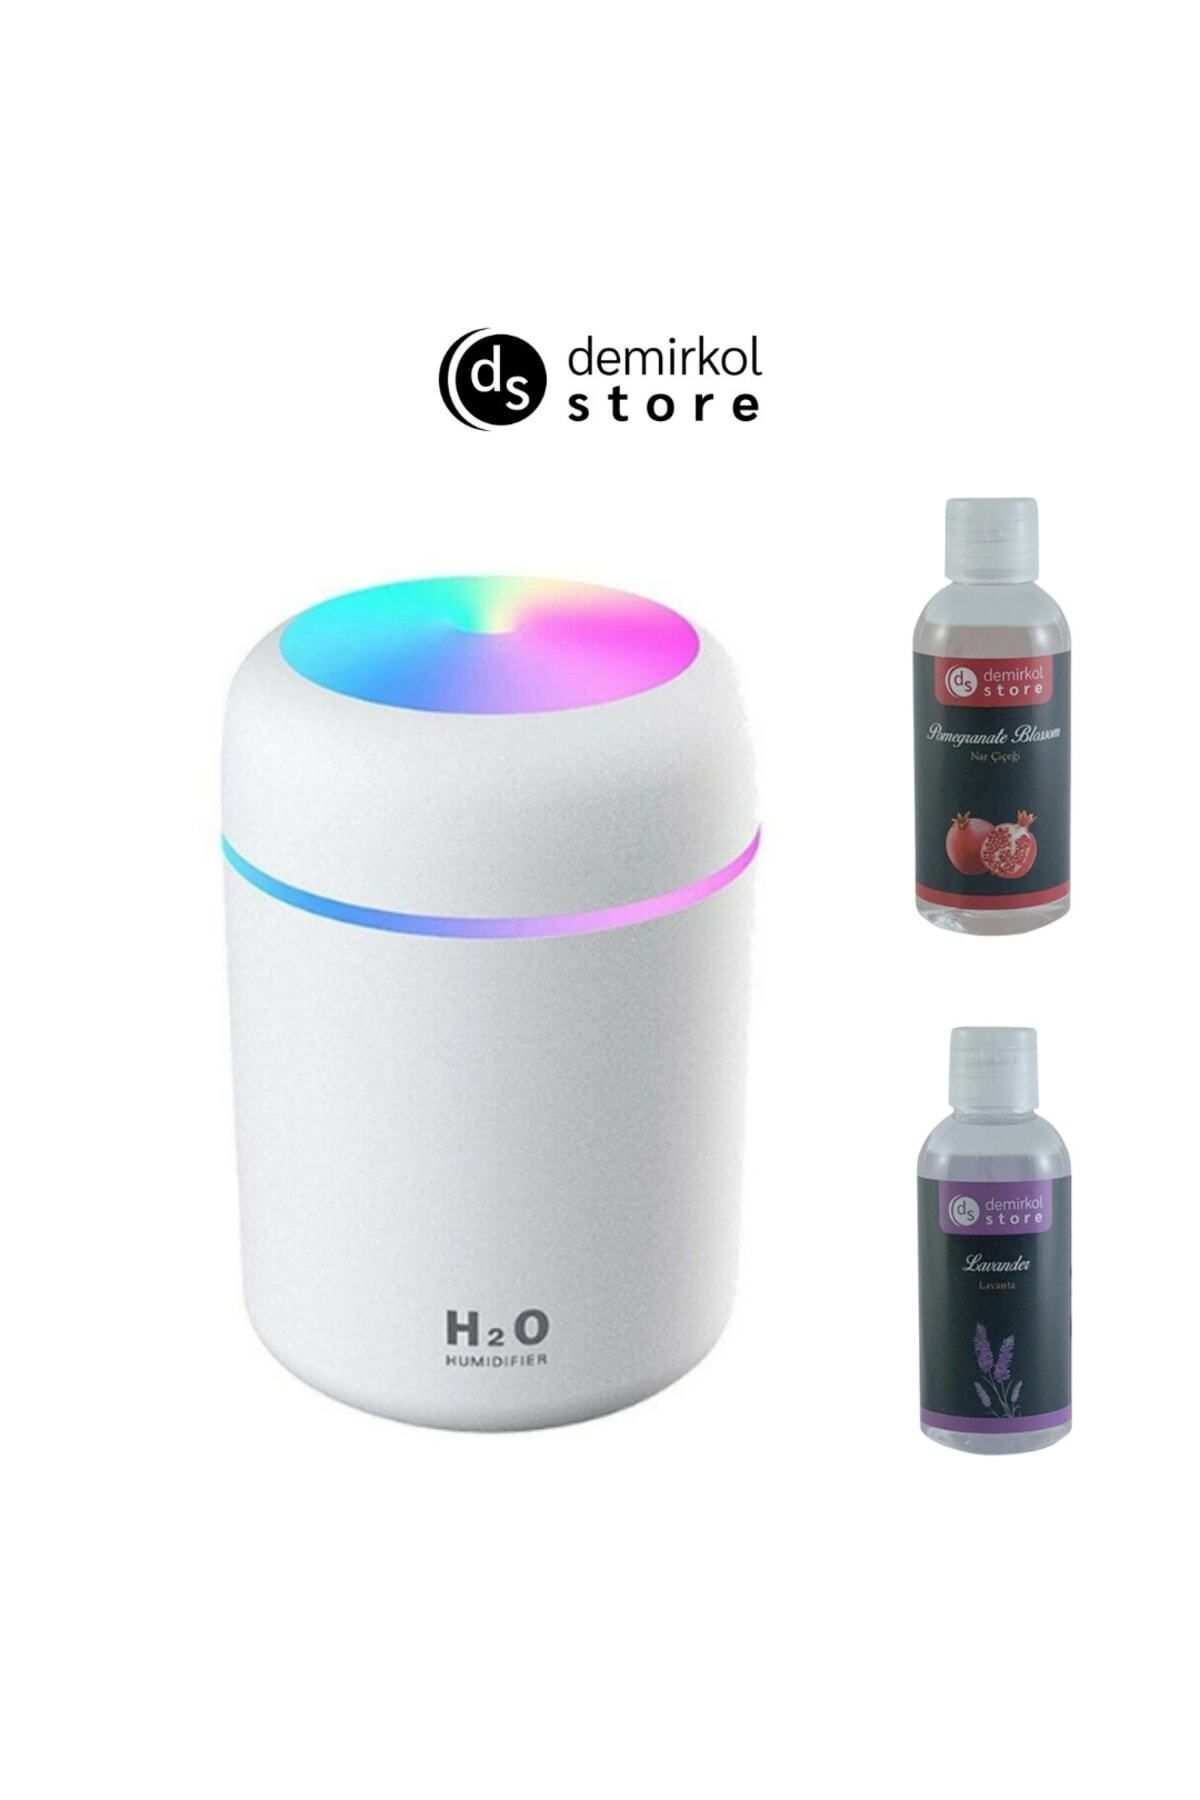 H2O Humidifier Demirkol Store 300 Ml Hava Nemlendirici Buhar Makinesi Ve Aroma Difüzörü + 2 Adet Ortam Kokusu